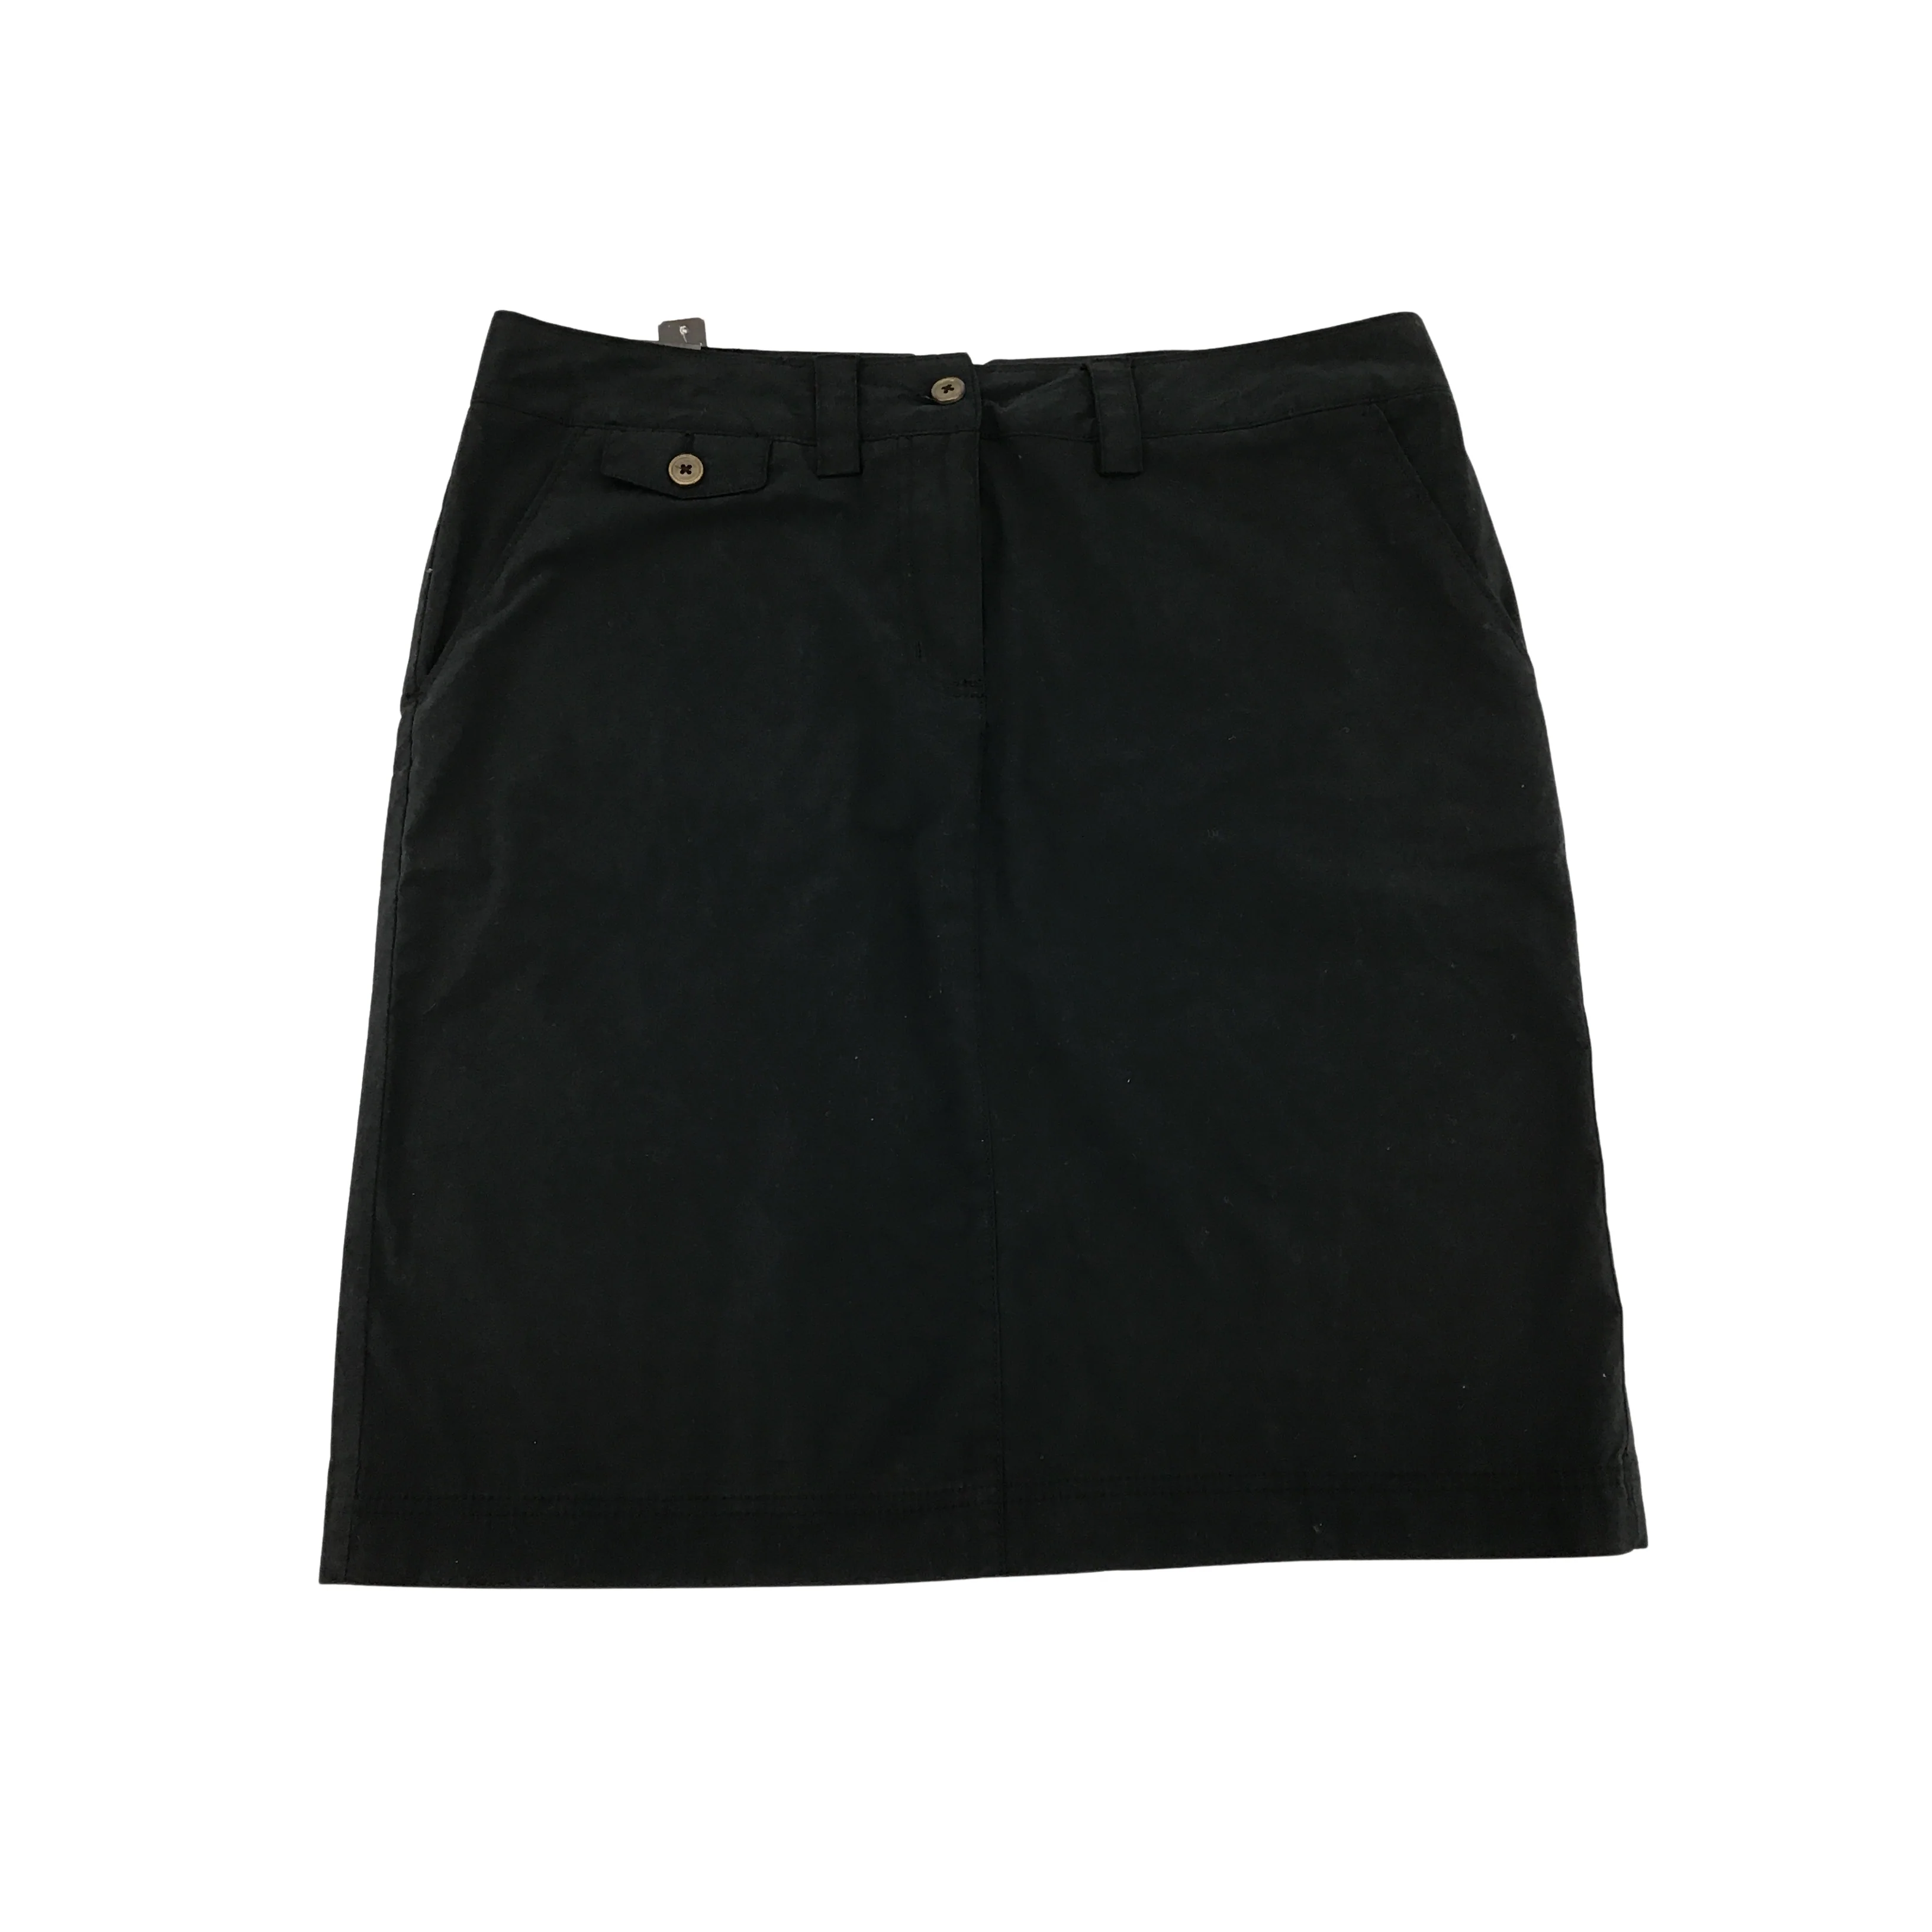 Nicole Miller : Women's Skirt / Black / Size 10